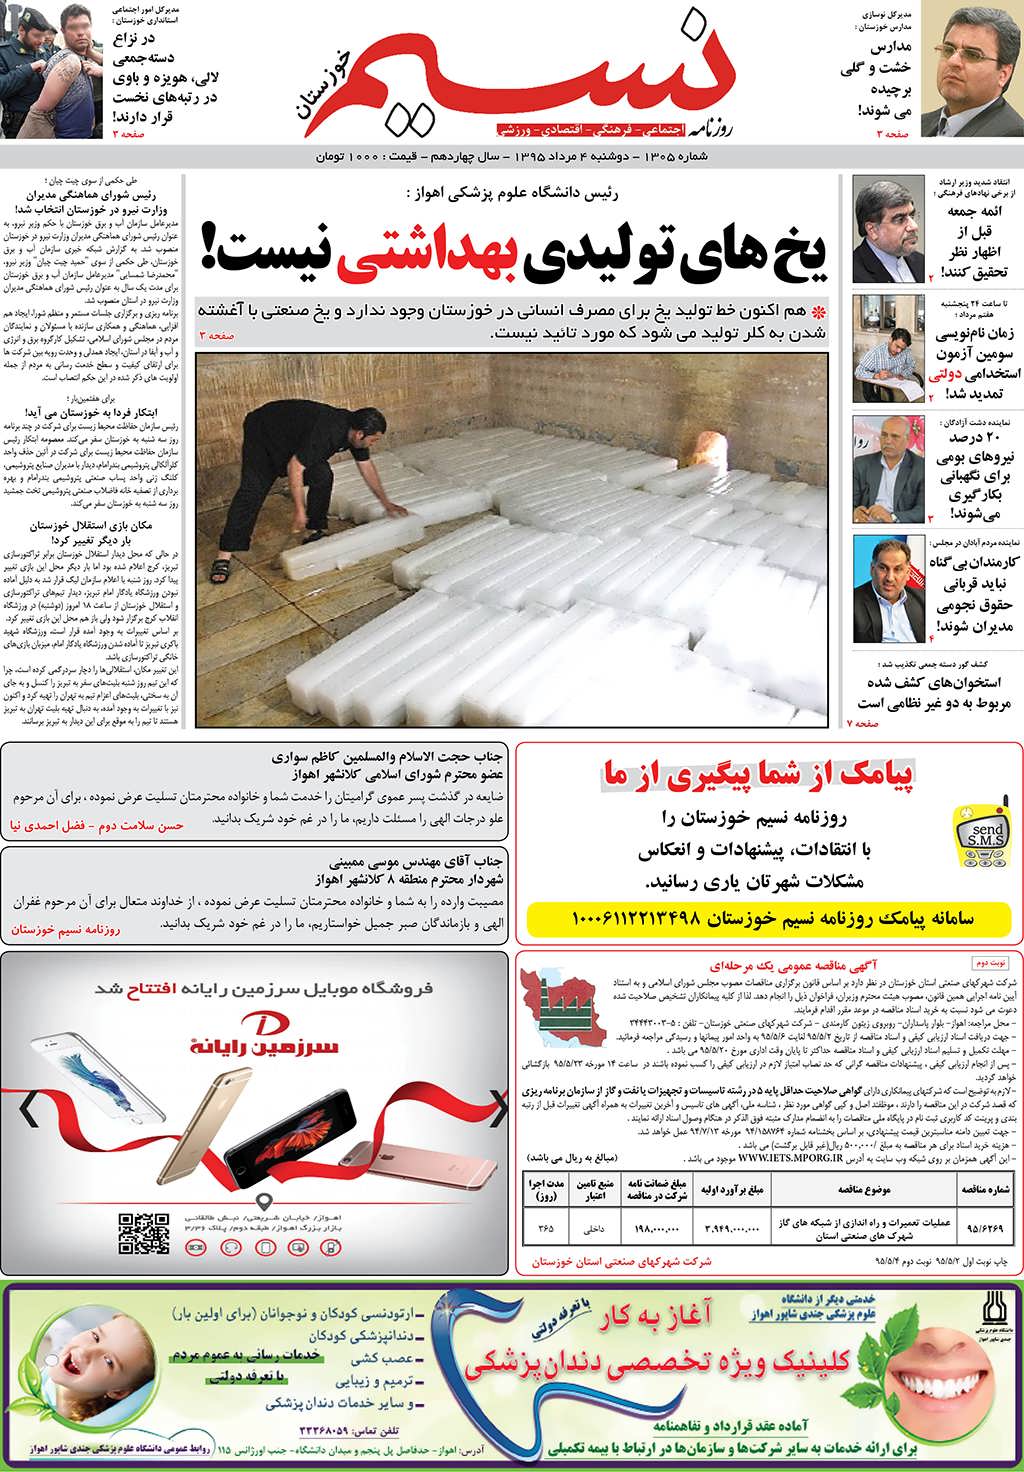 صفحه اصلی روزنامه نسیم شماره 1305